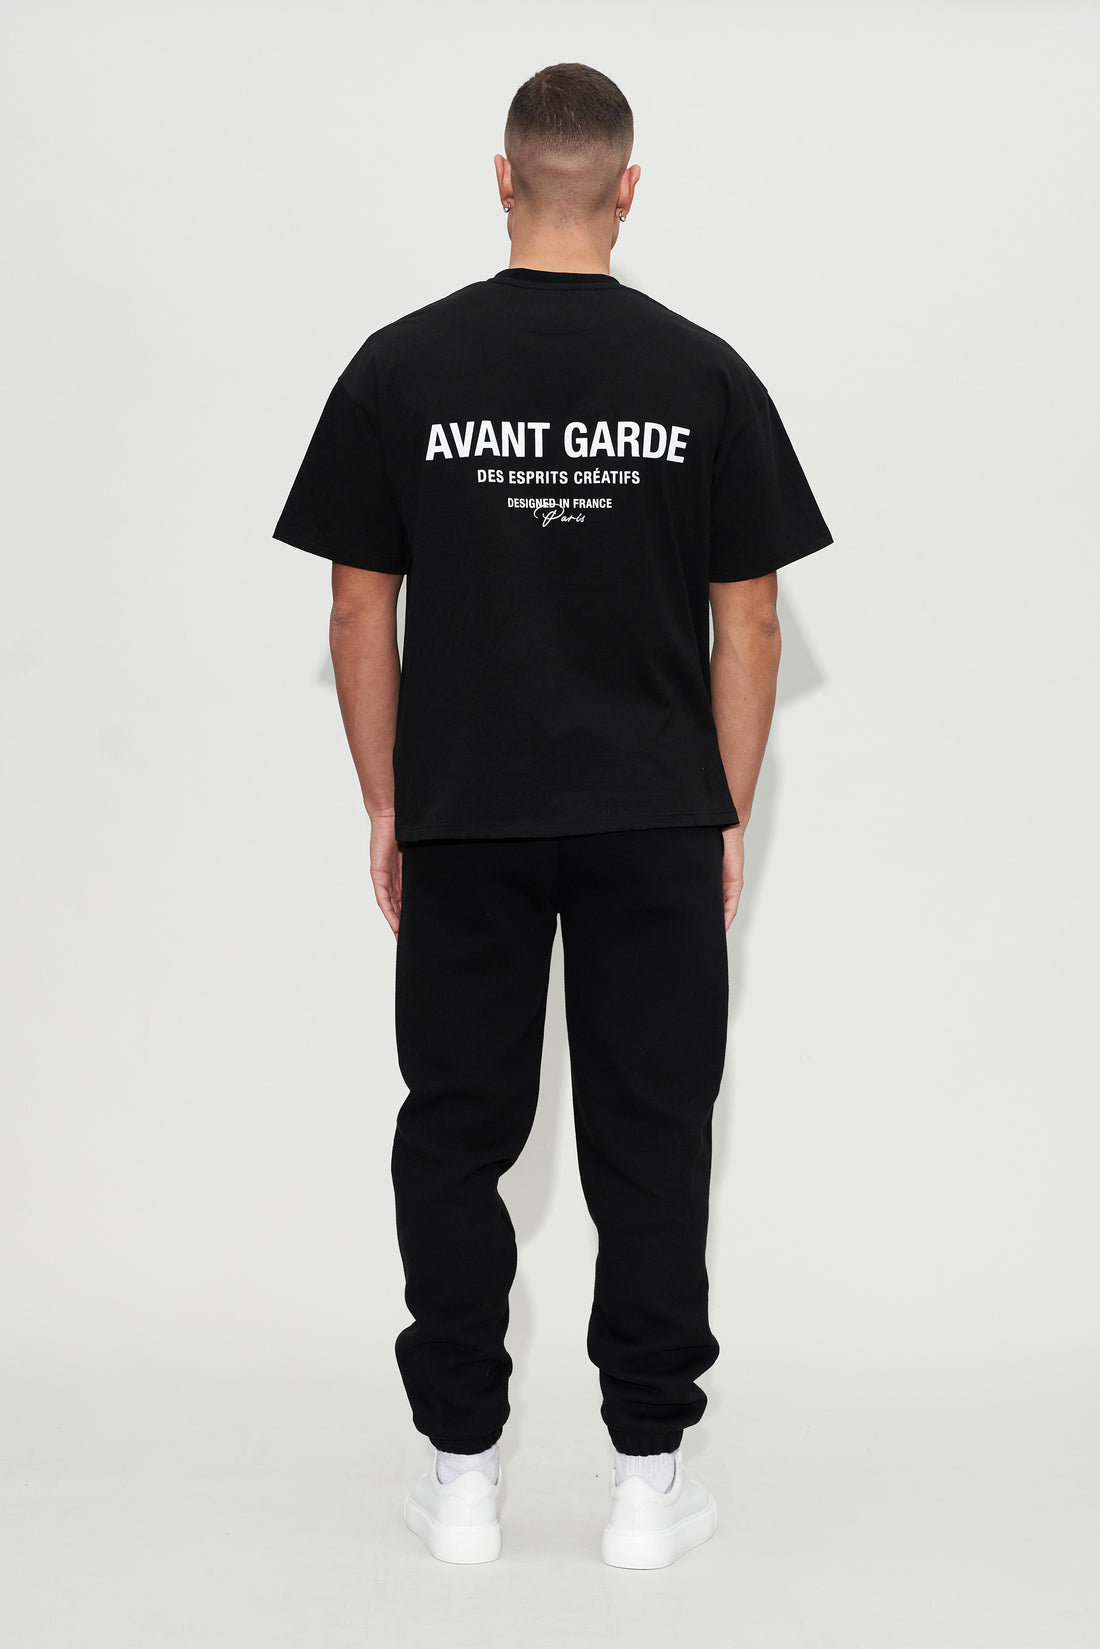 back design of Avant Garde t-shirt in black